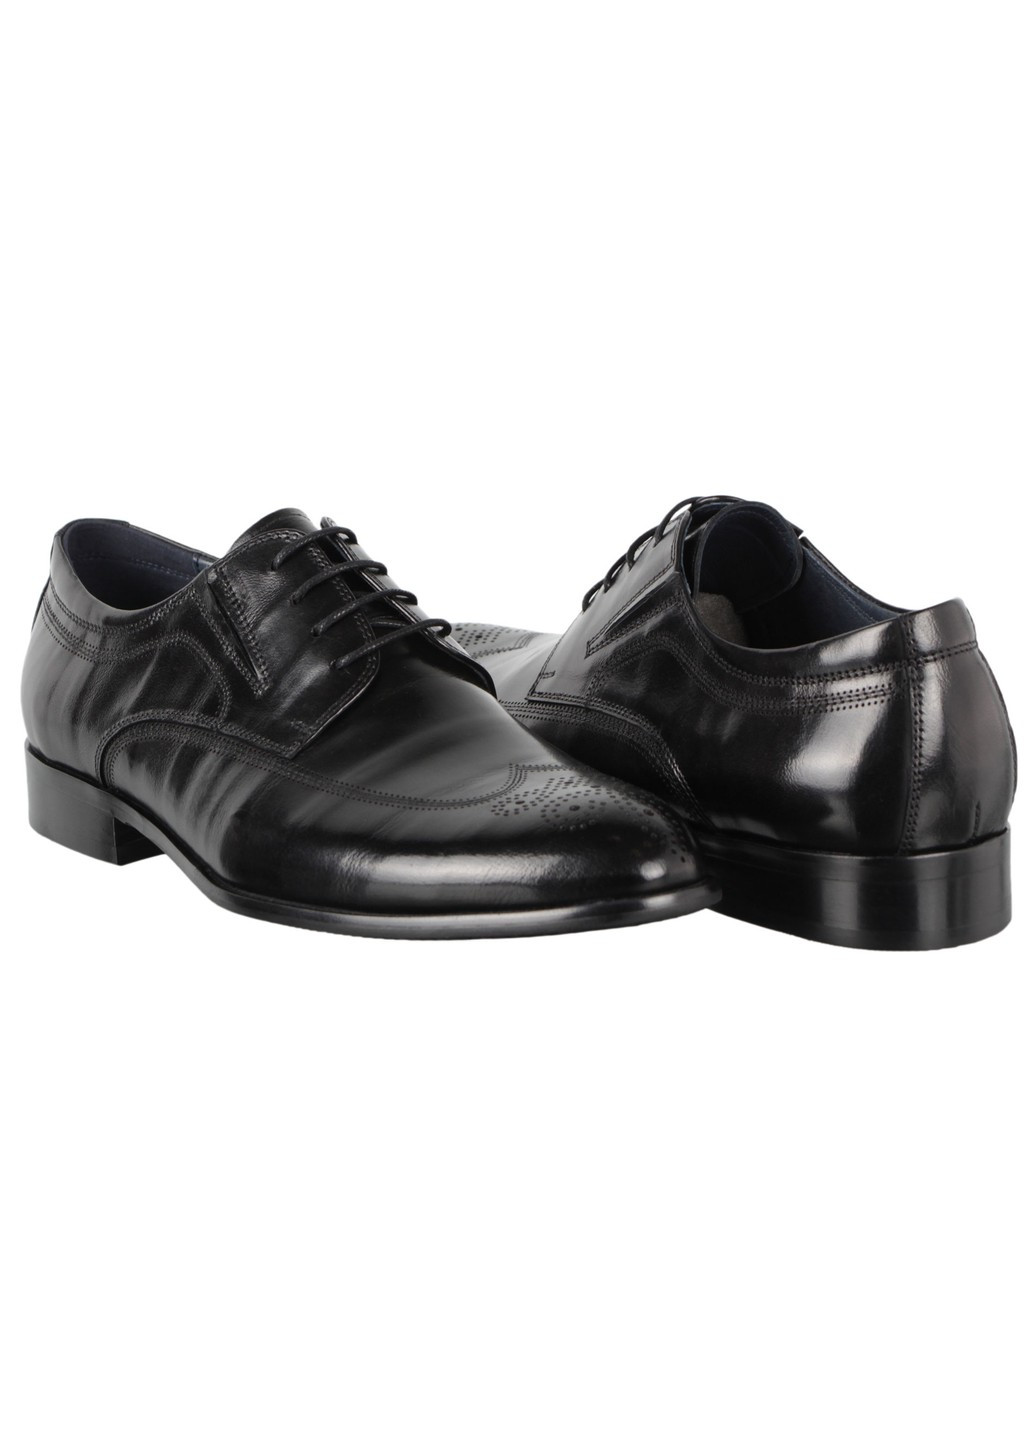 Черные мужские туфли классические 198379 Buts без шнурков